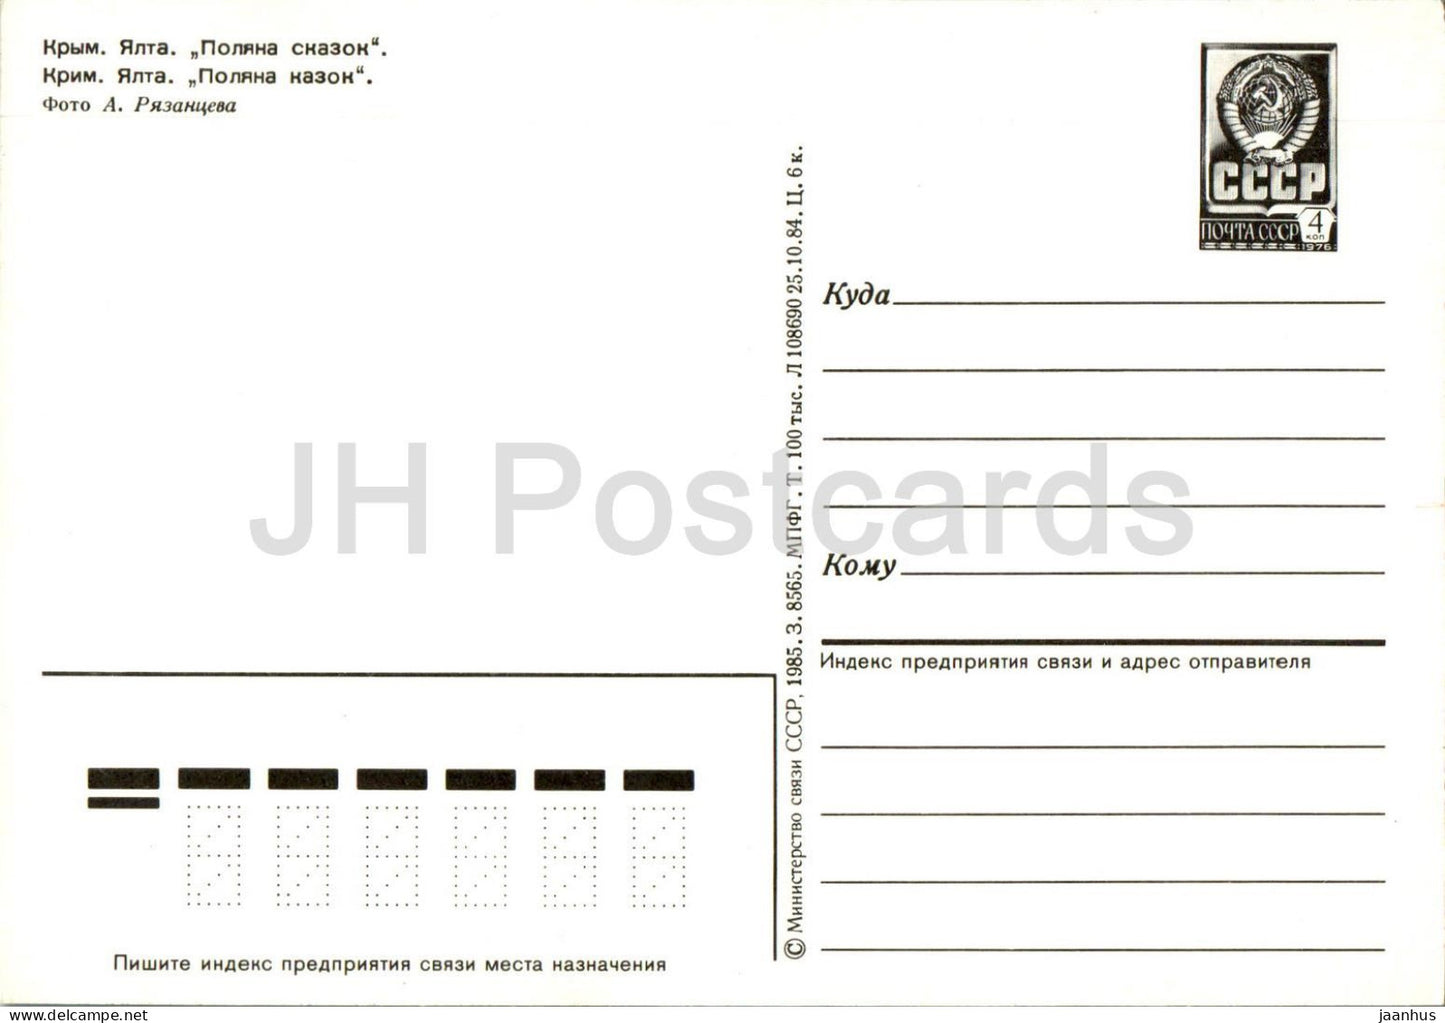 Yalta - Glade of Fairy Tales - multiview - Crimea - postal stationery - 1985 - Ukraine USSR - unused